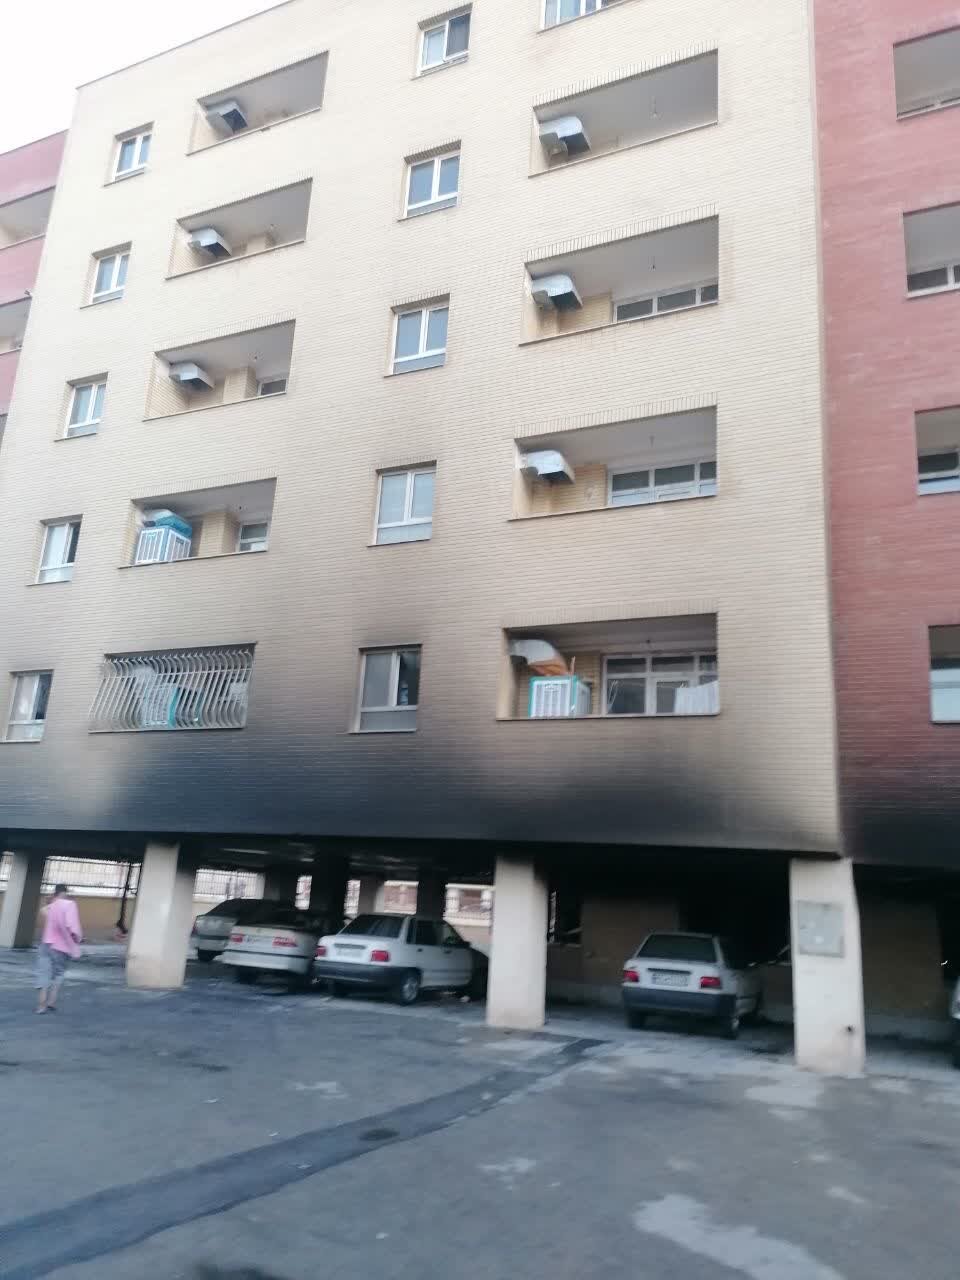 حریق مرگبار در پارکینگ مجتمع مسکونی ۵ طبقه در فولادشهر + عکس